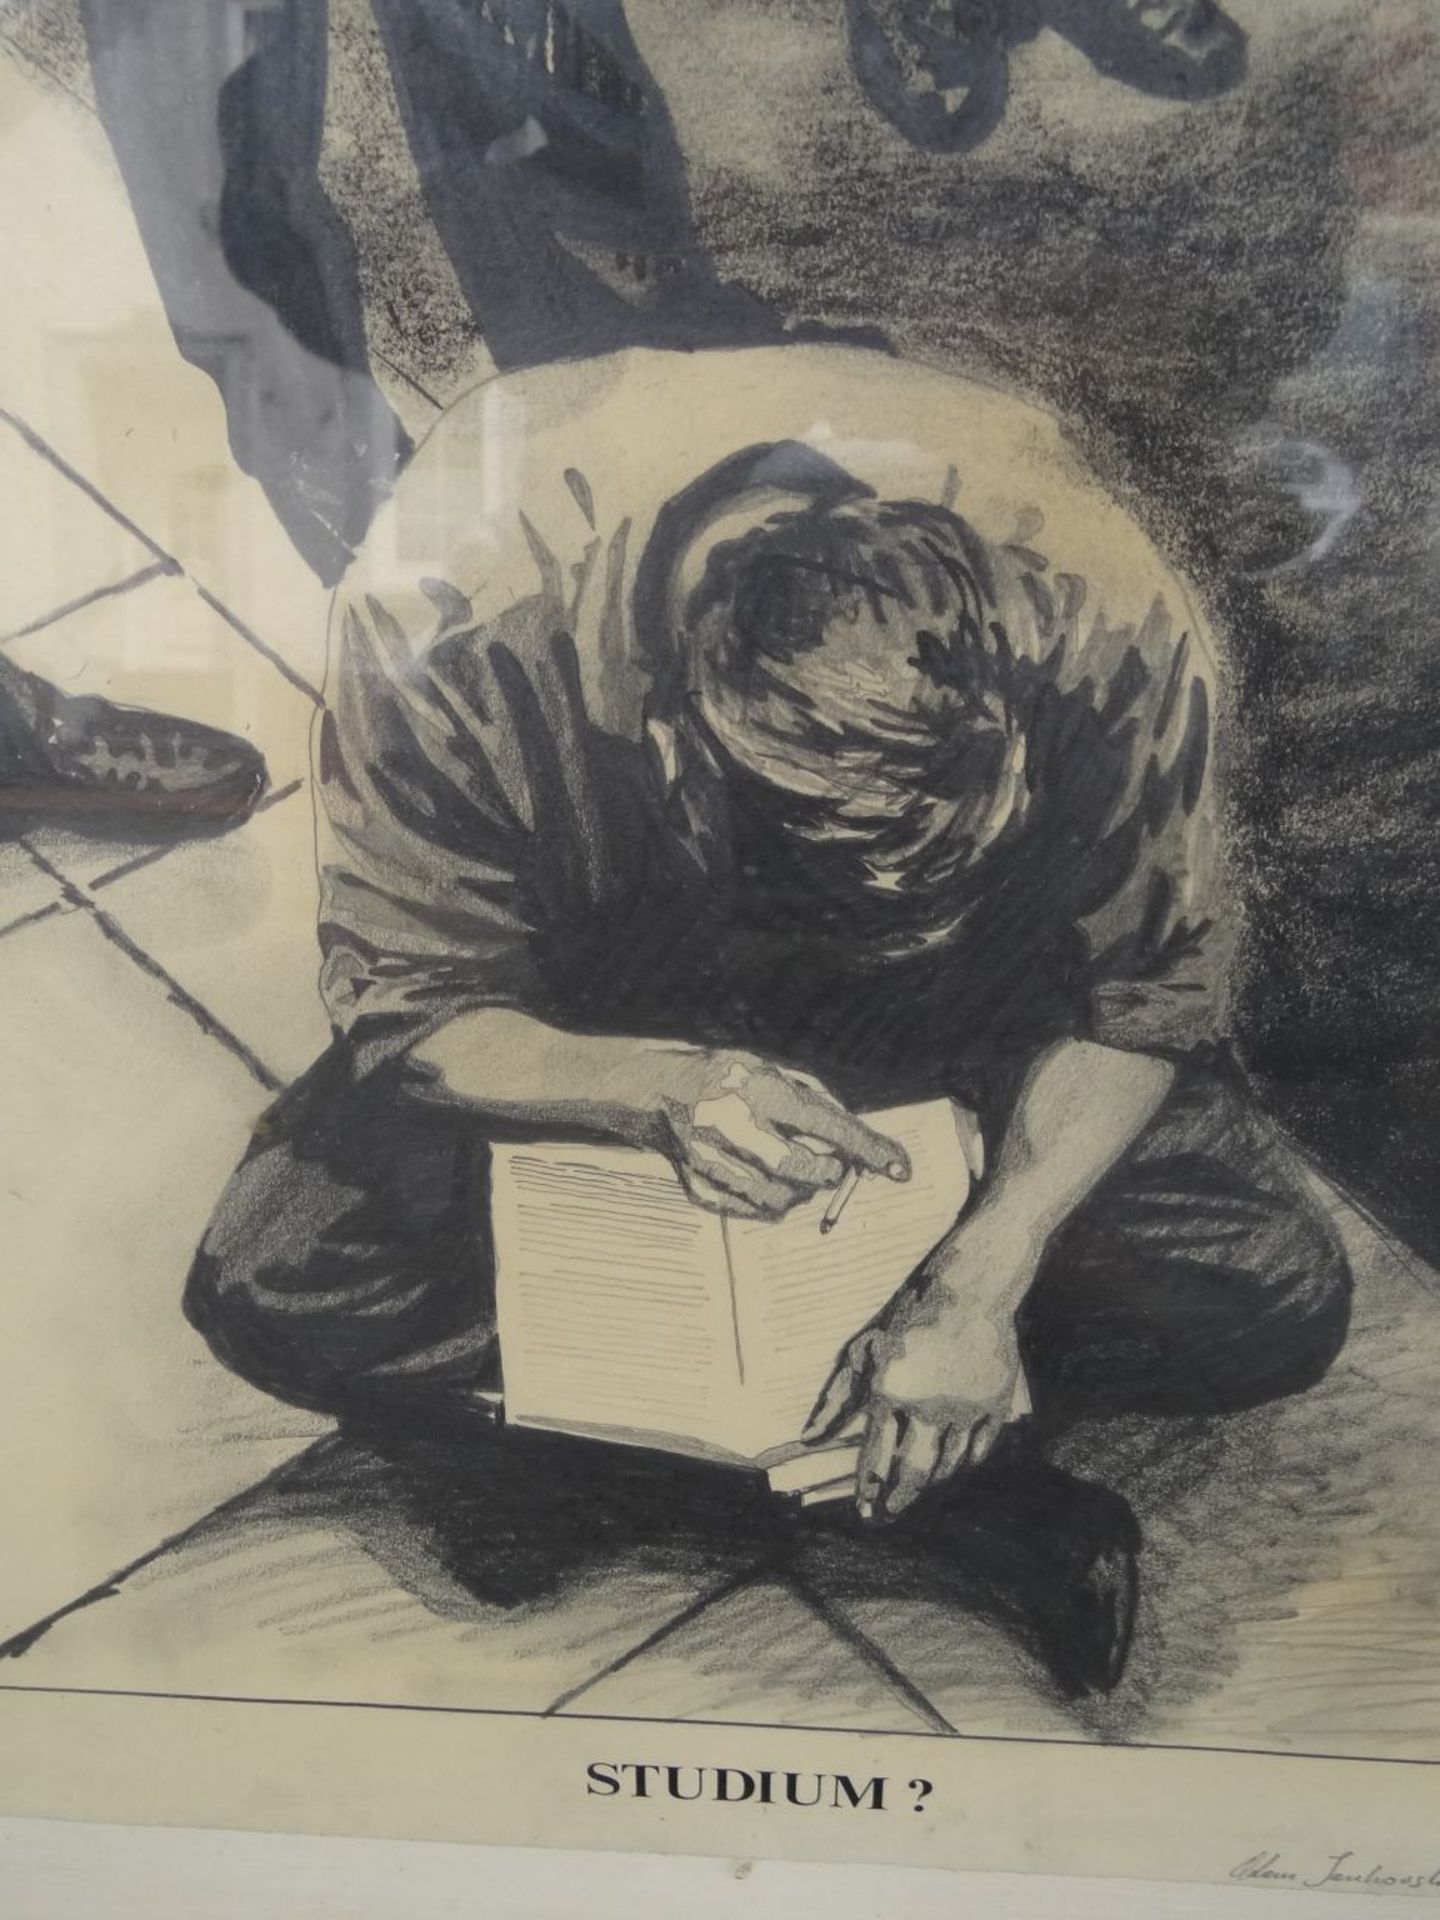 unleserl, signiert, 1975? "Studium" betitelte gr. Zeichnung, dat. 1968, ger/Glas, RG 89x68 cm - Image 3 of 7